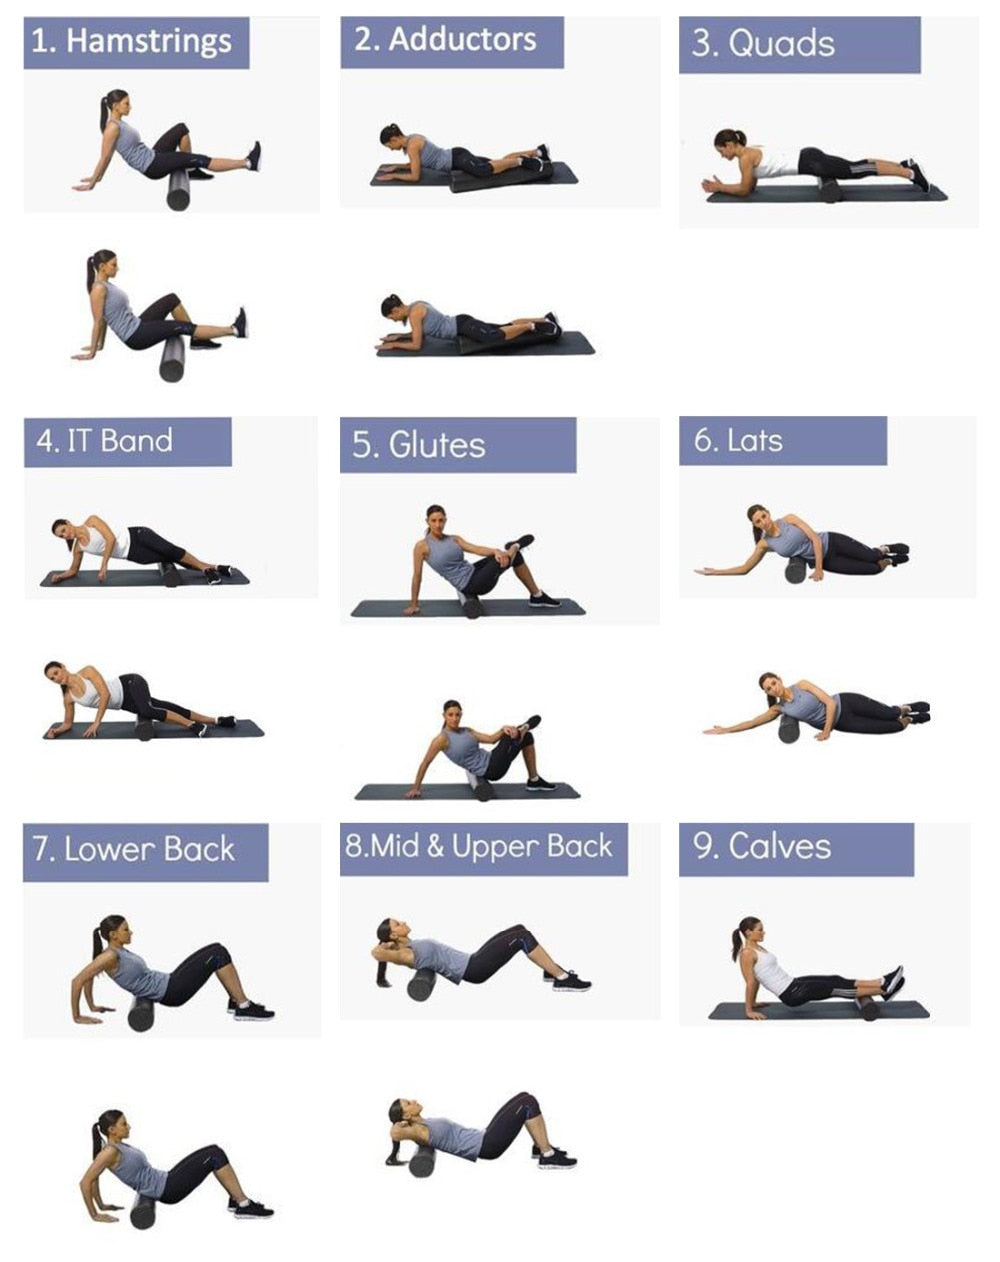 Yoga Block Roller Fitness Ball Set EPP High Density Foam Roller Deep Tissue Massage Pilates Body Muscle Release Exercises